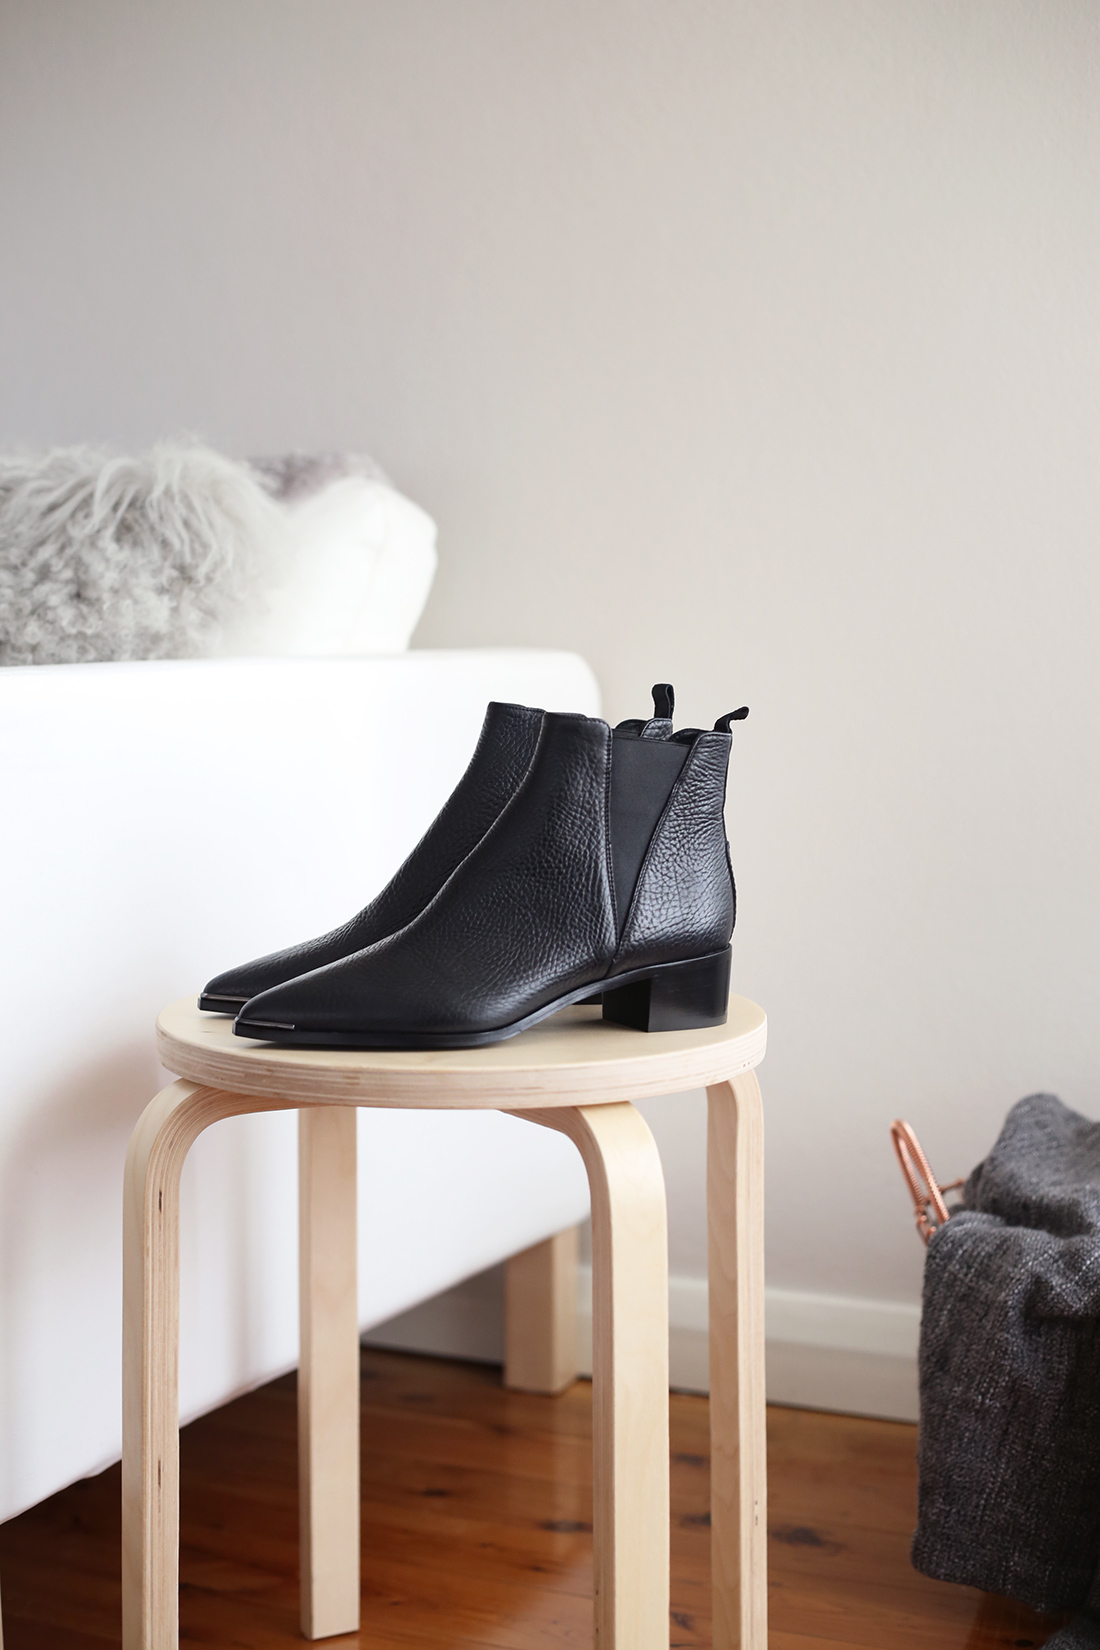 Acne Studios Jensen Boots - Mademoiselle Minimal Style Blog